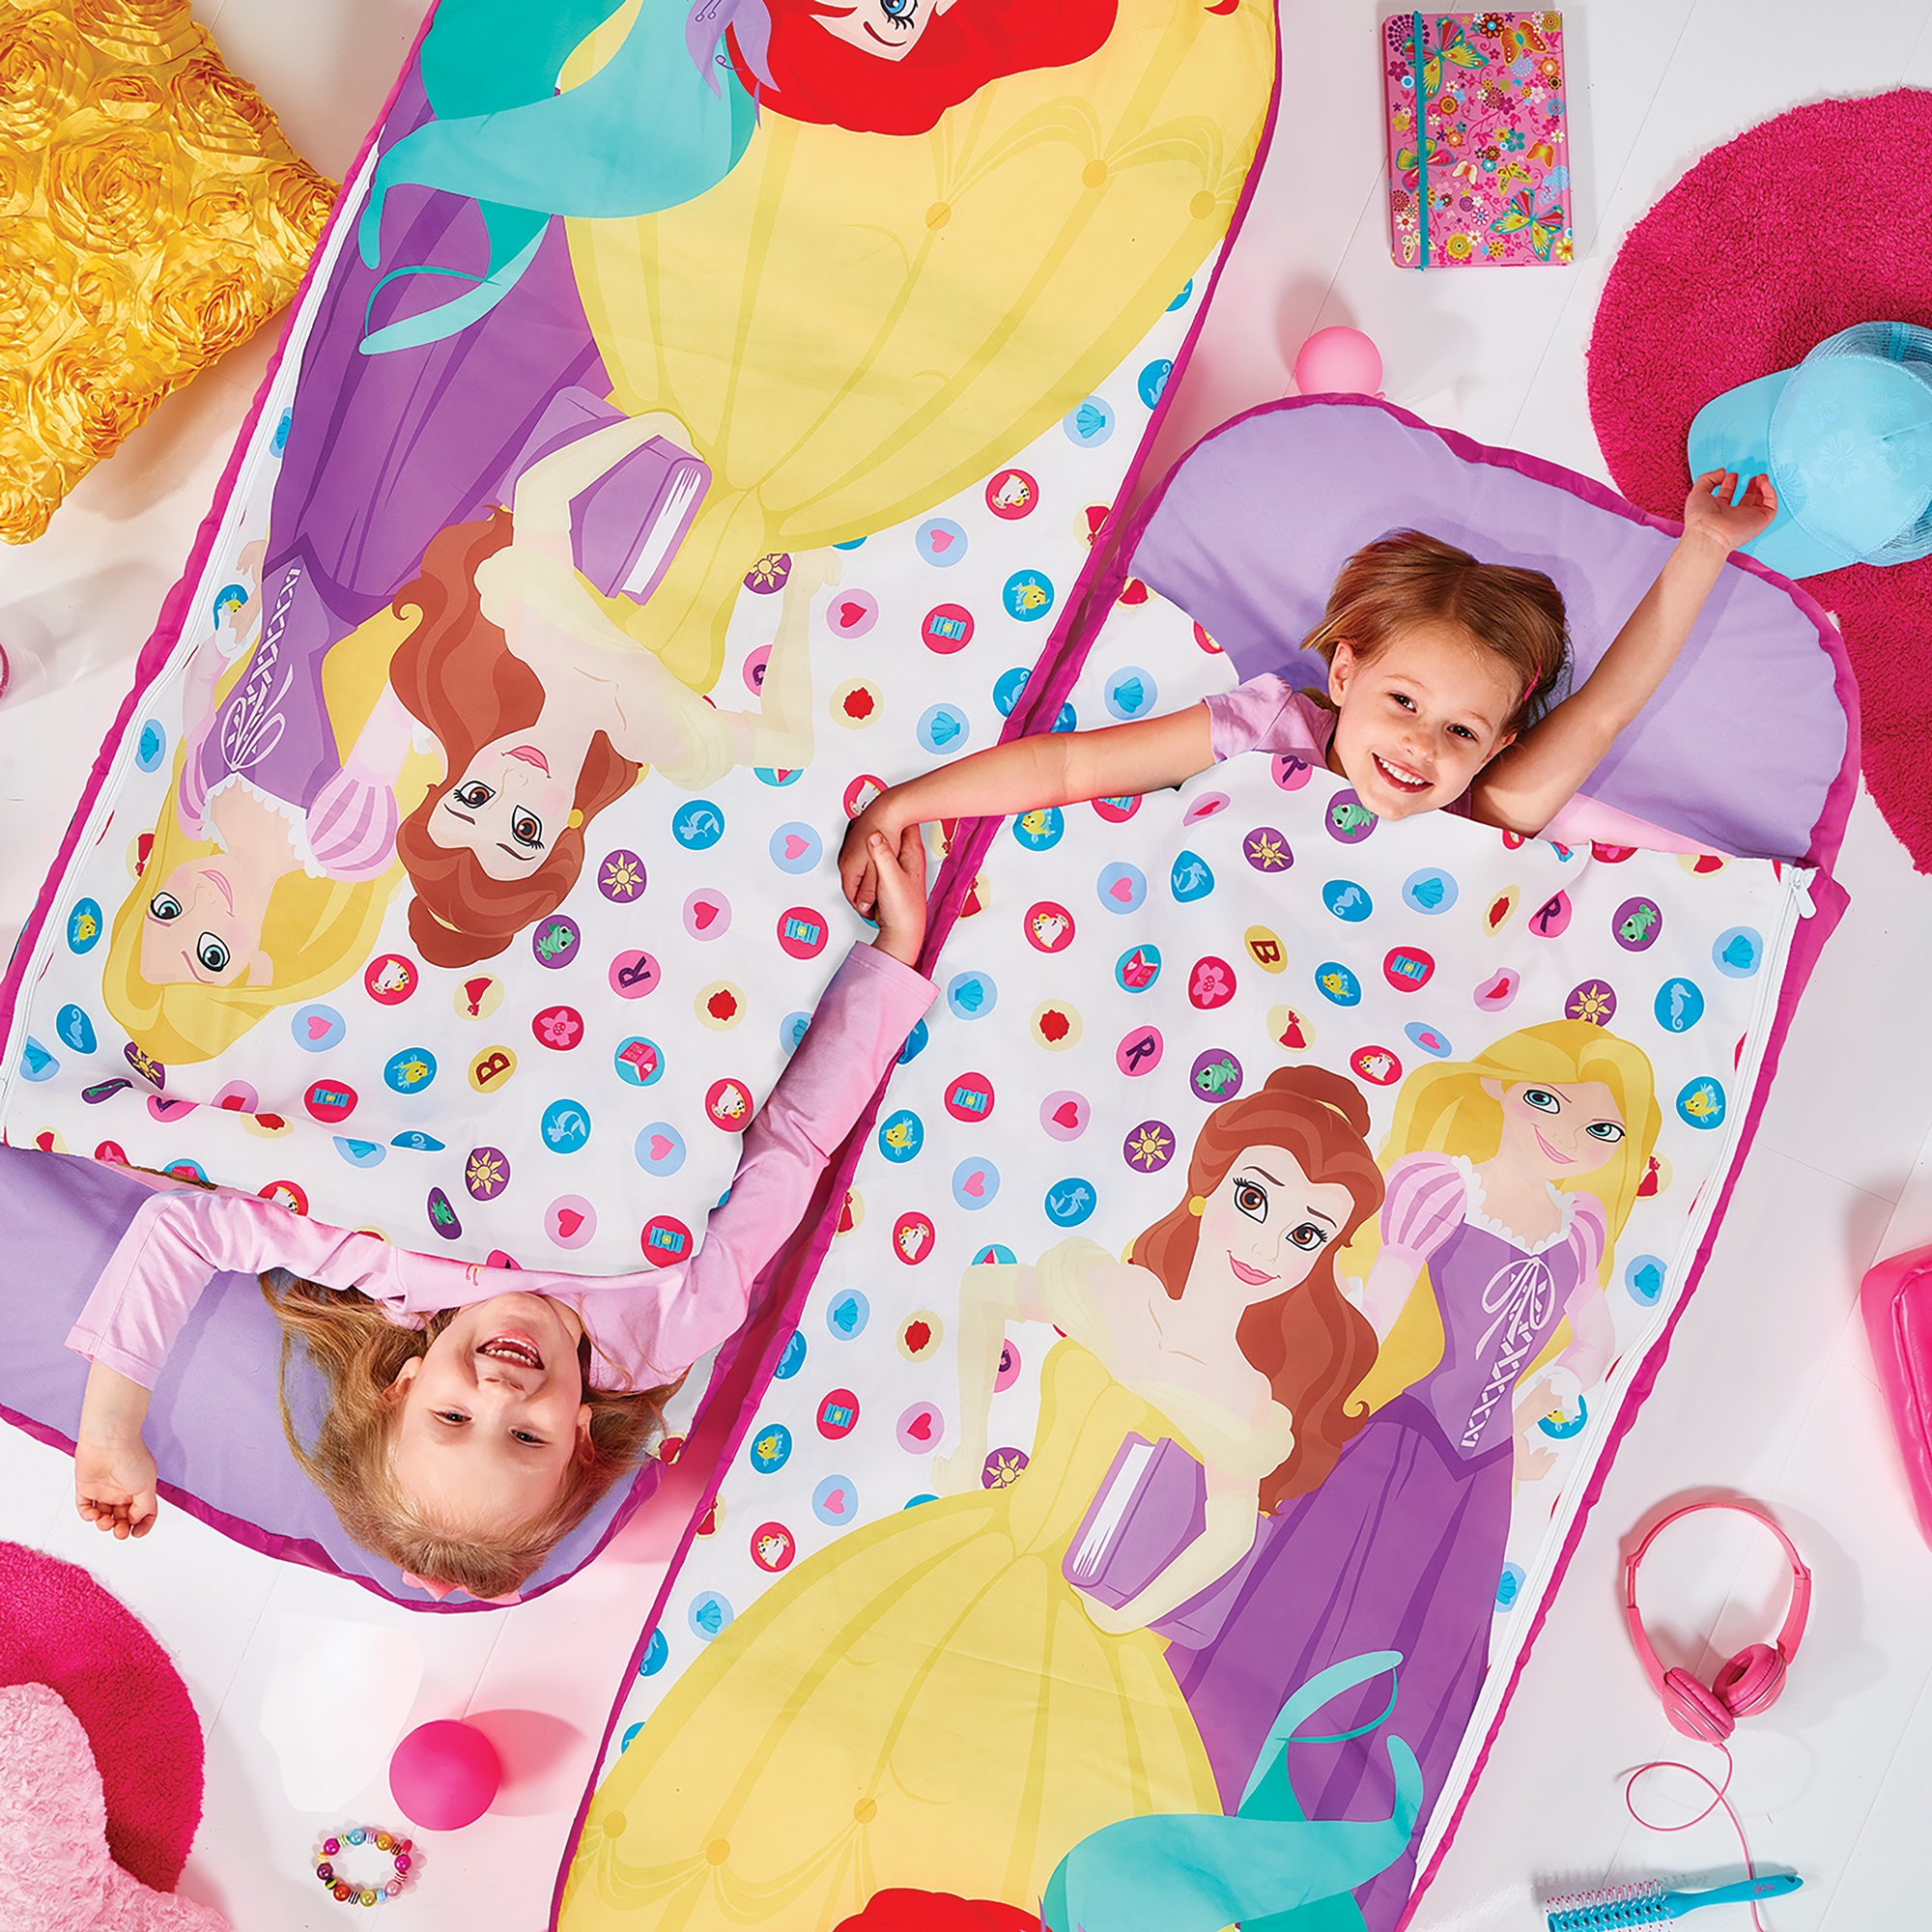 Παιδικά φουσκωτά κρεβάτια- υπνόσακοι της Disney: Πανέμορφα και πρακτικά